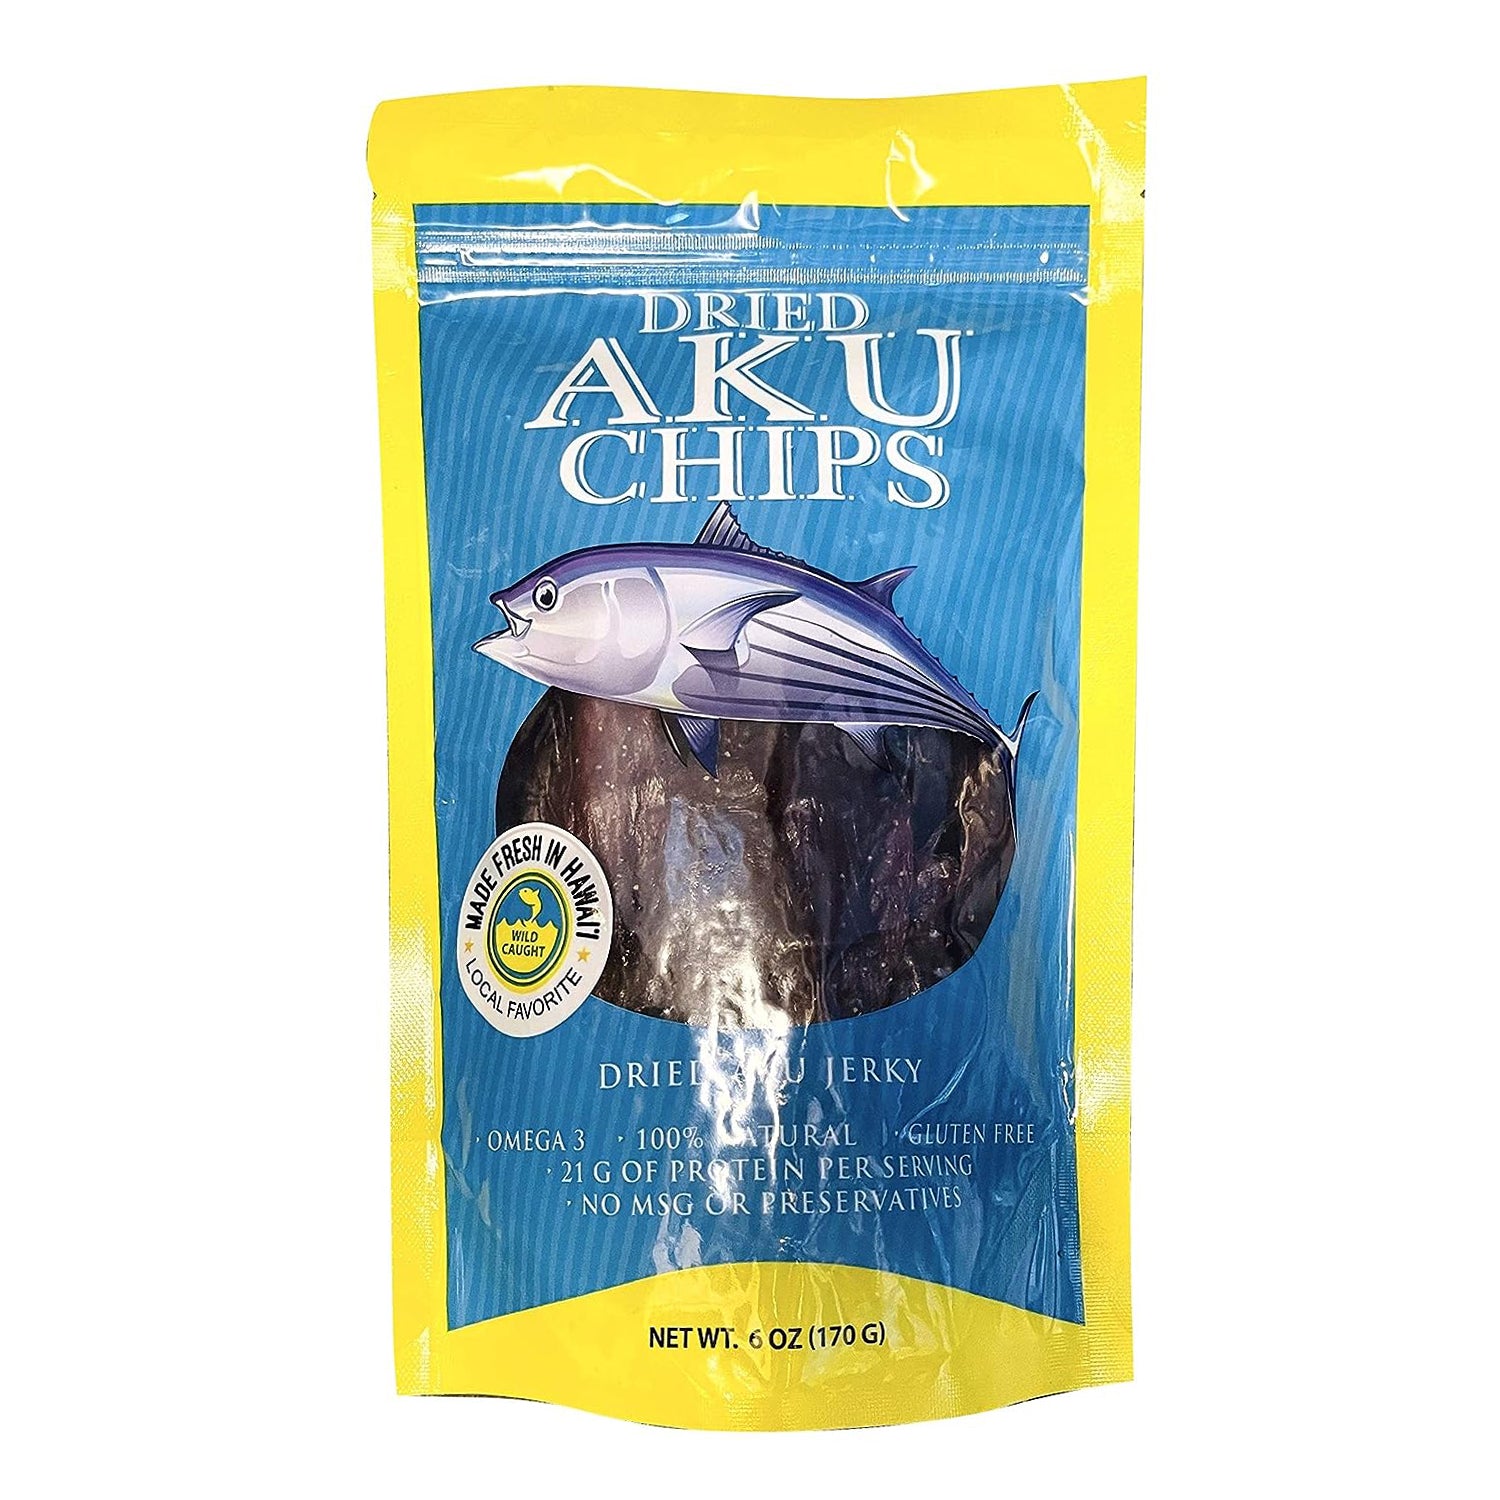 Hilo Hawaii Dried Wild Aku Skipjack Tuna Chips